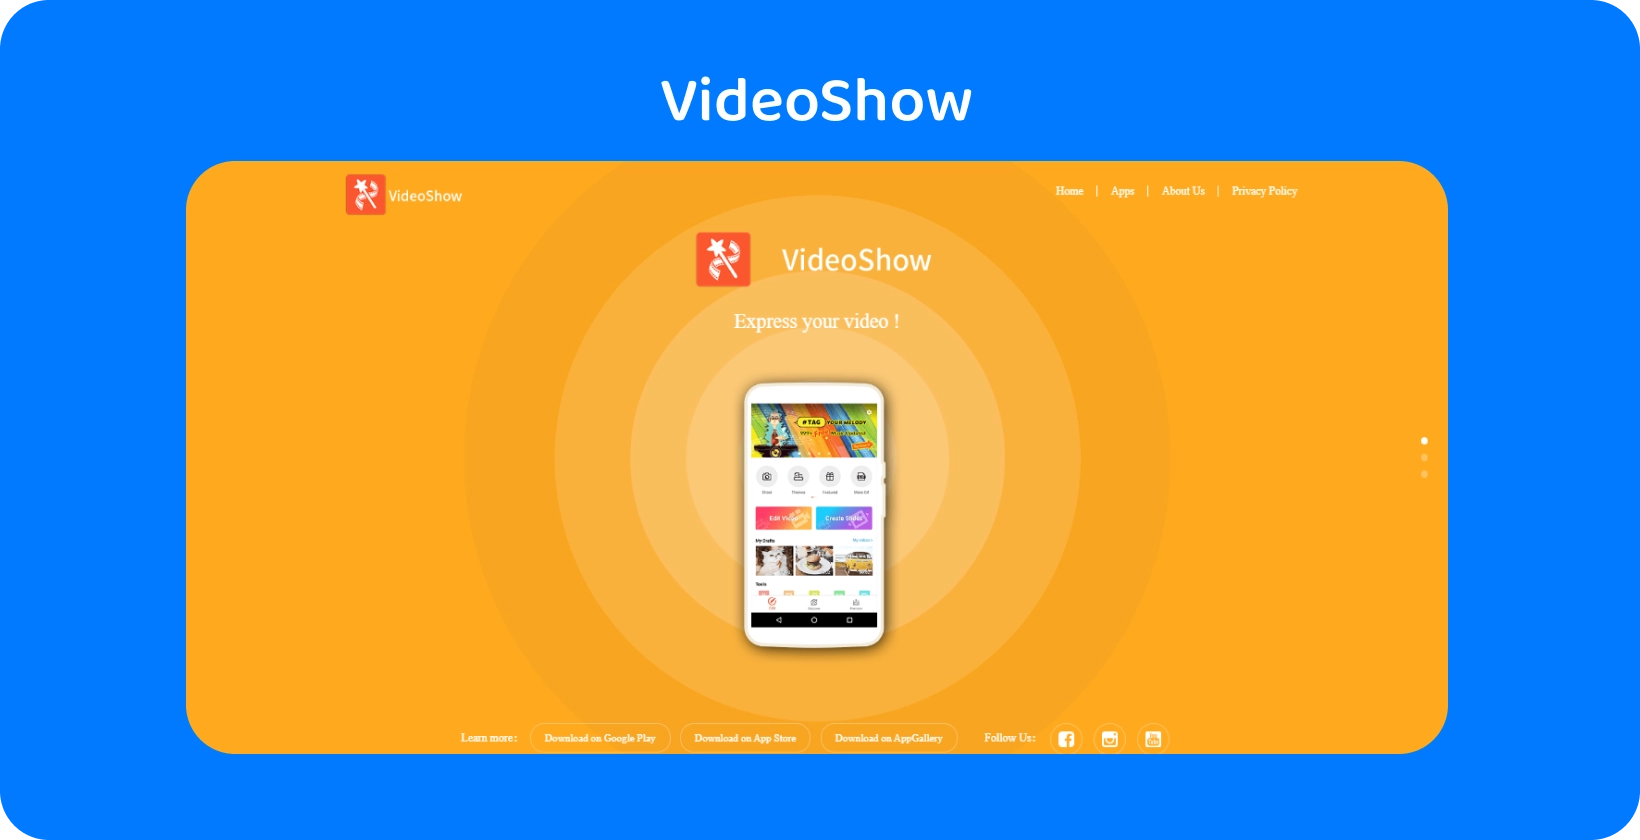 VideoShow interface do aplicativo em uma tela, oferecendo ferramentas fáceis de edição de vídeo e recursos em um fundo laranja vibrante.